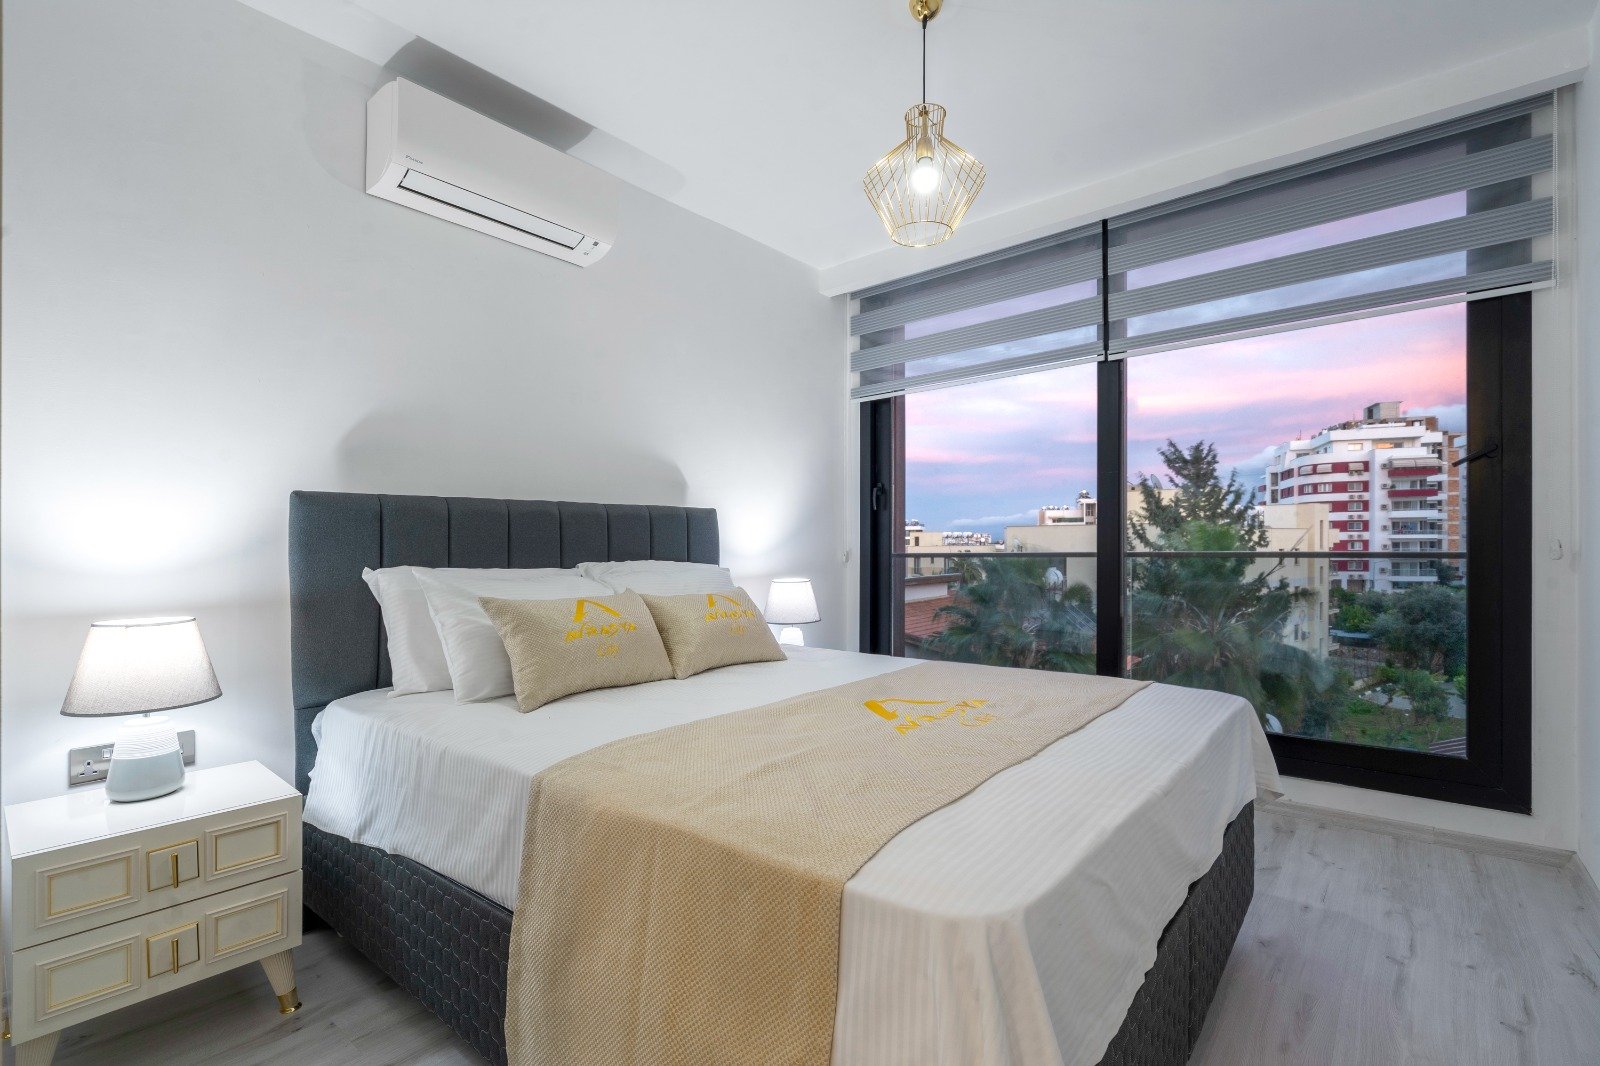 3 Bedroom Apartment For Sale In Kyrenia Center -0d03ac12-32c7-487c-8e73-1f0571ae7271